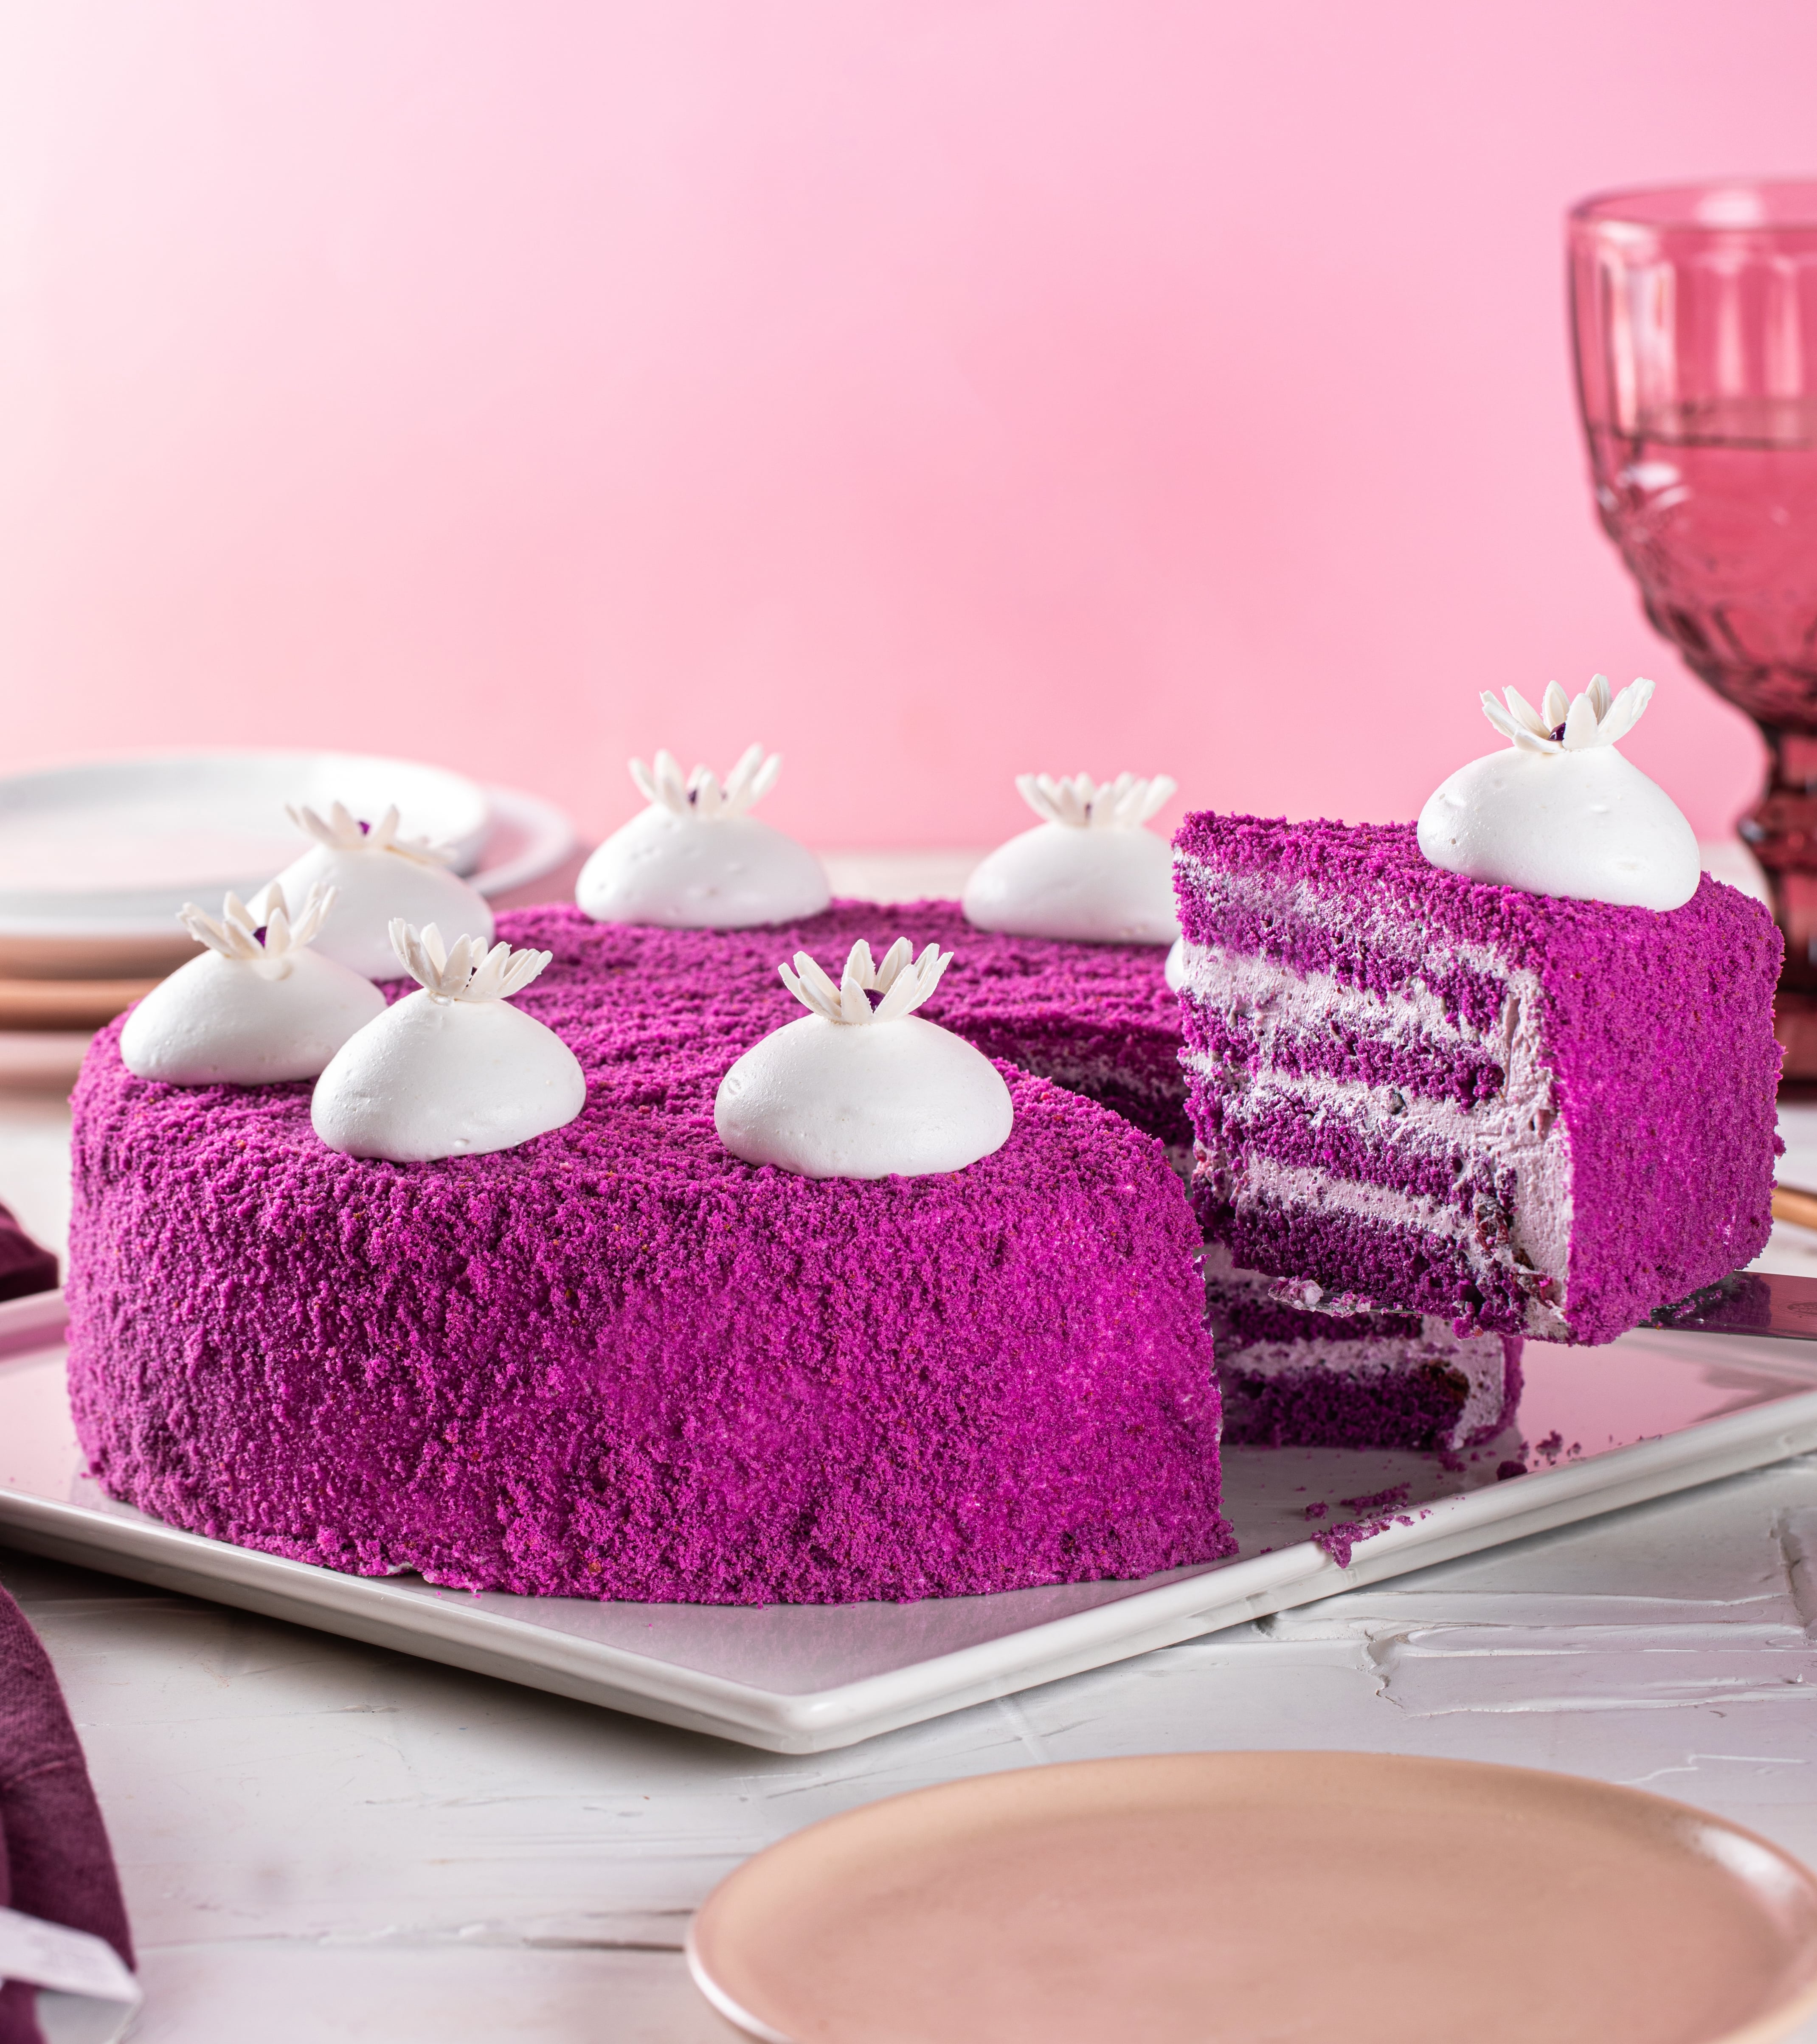 Buy Purple Velvet Cake Oman | Best Purple Velvet Cake in Oman | Modern ...